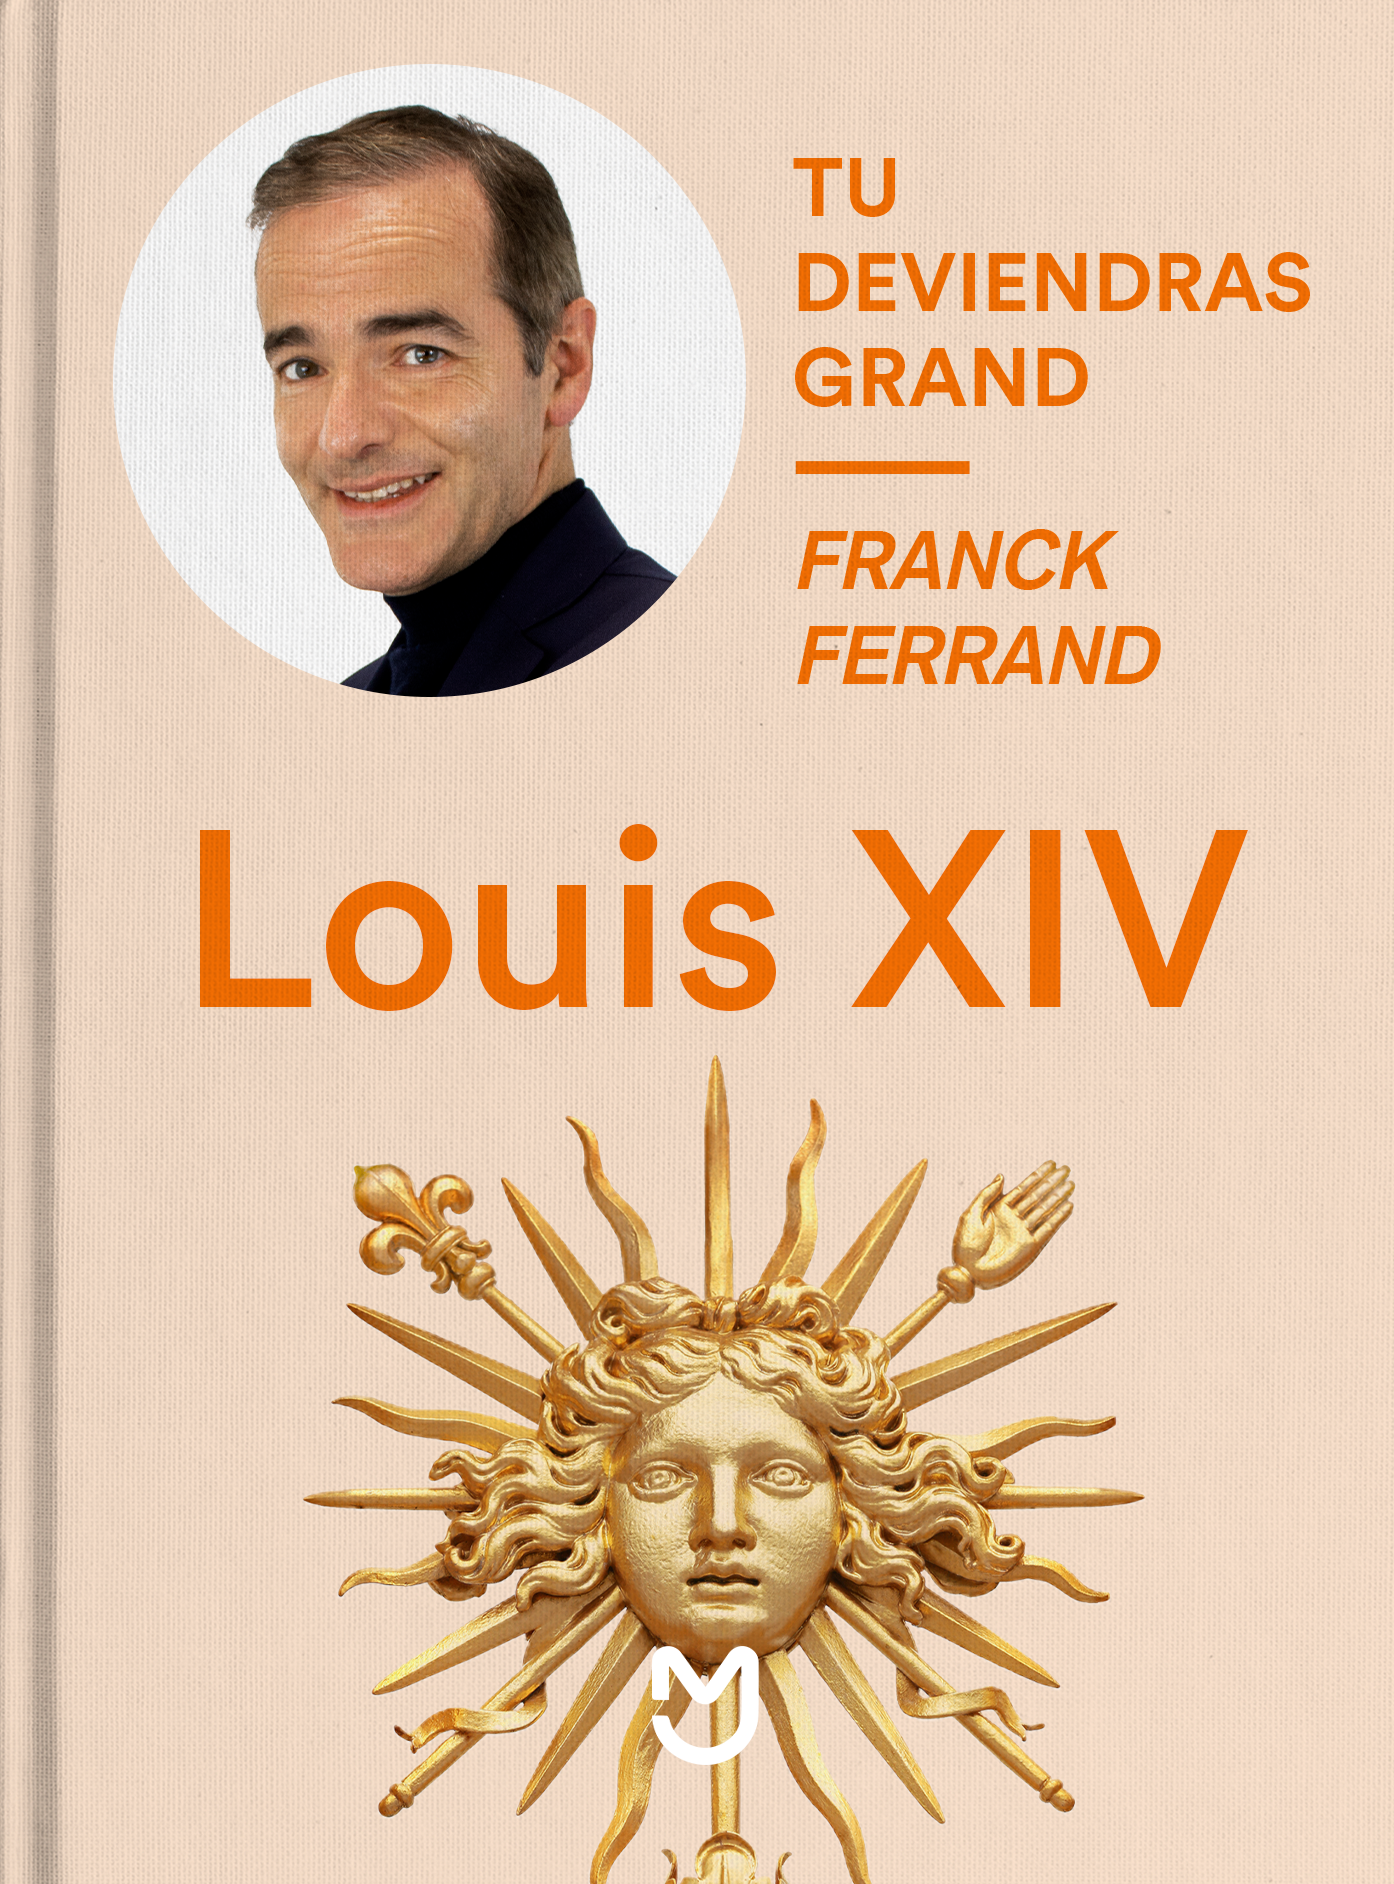 Franck Ferrand, Louis XIV